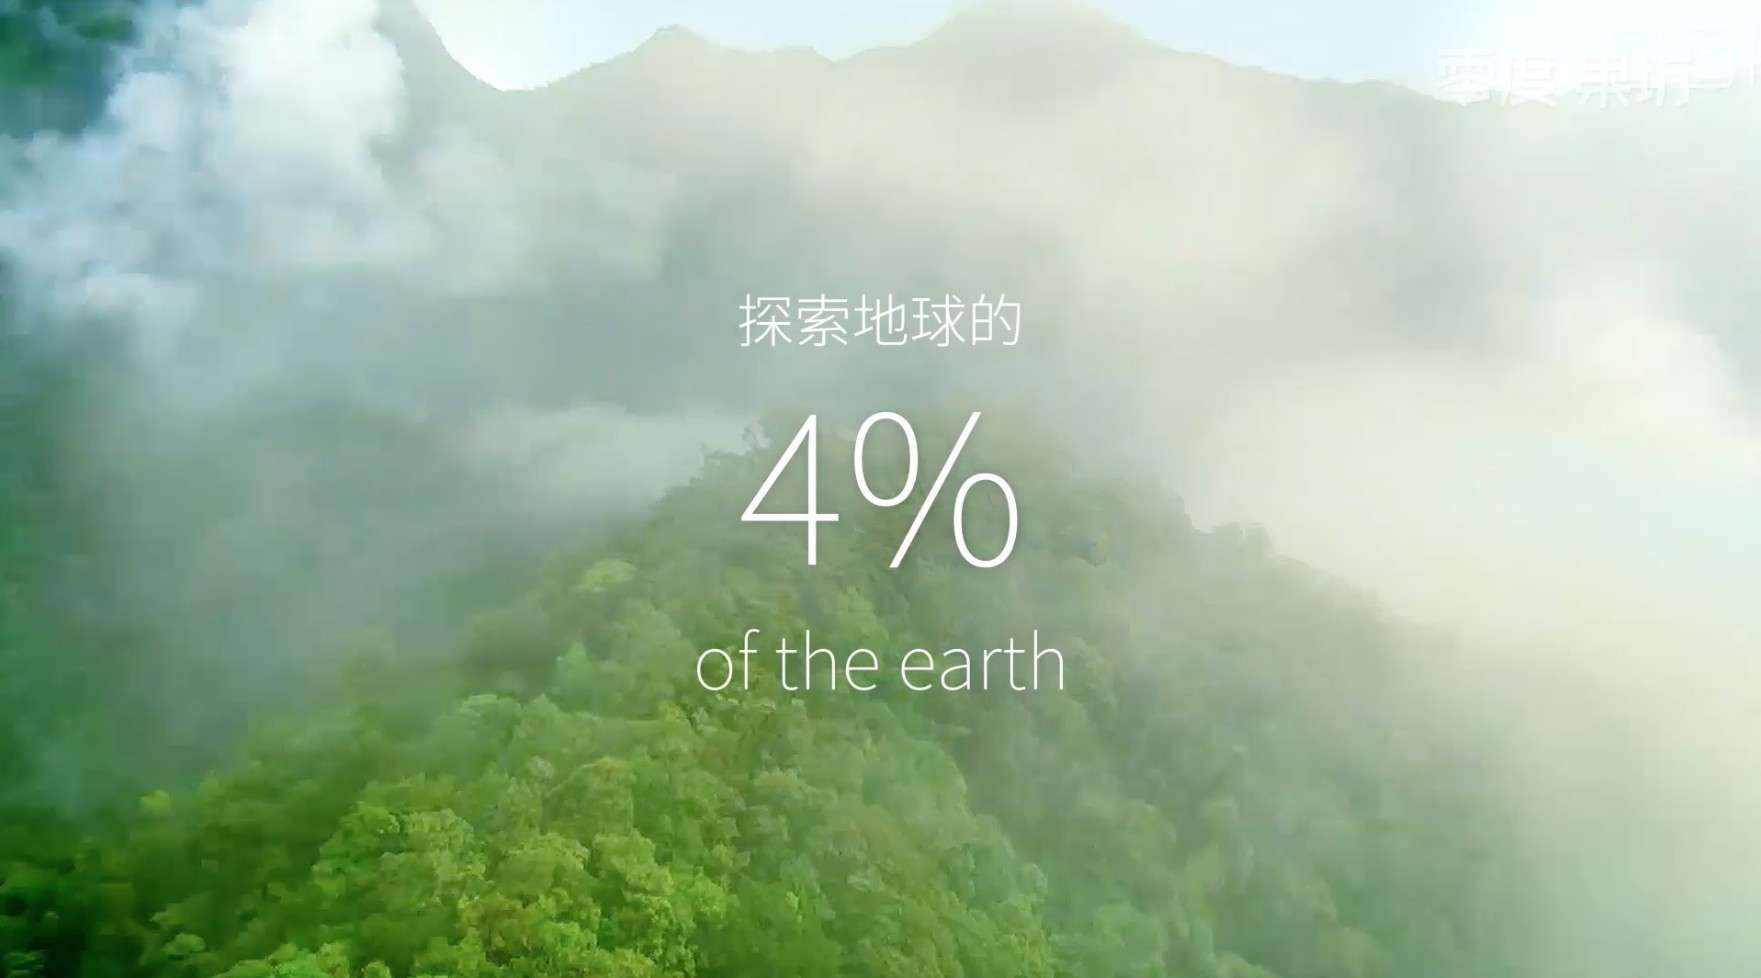 堪比纪录片的广告大片 《探索地球的4%》